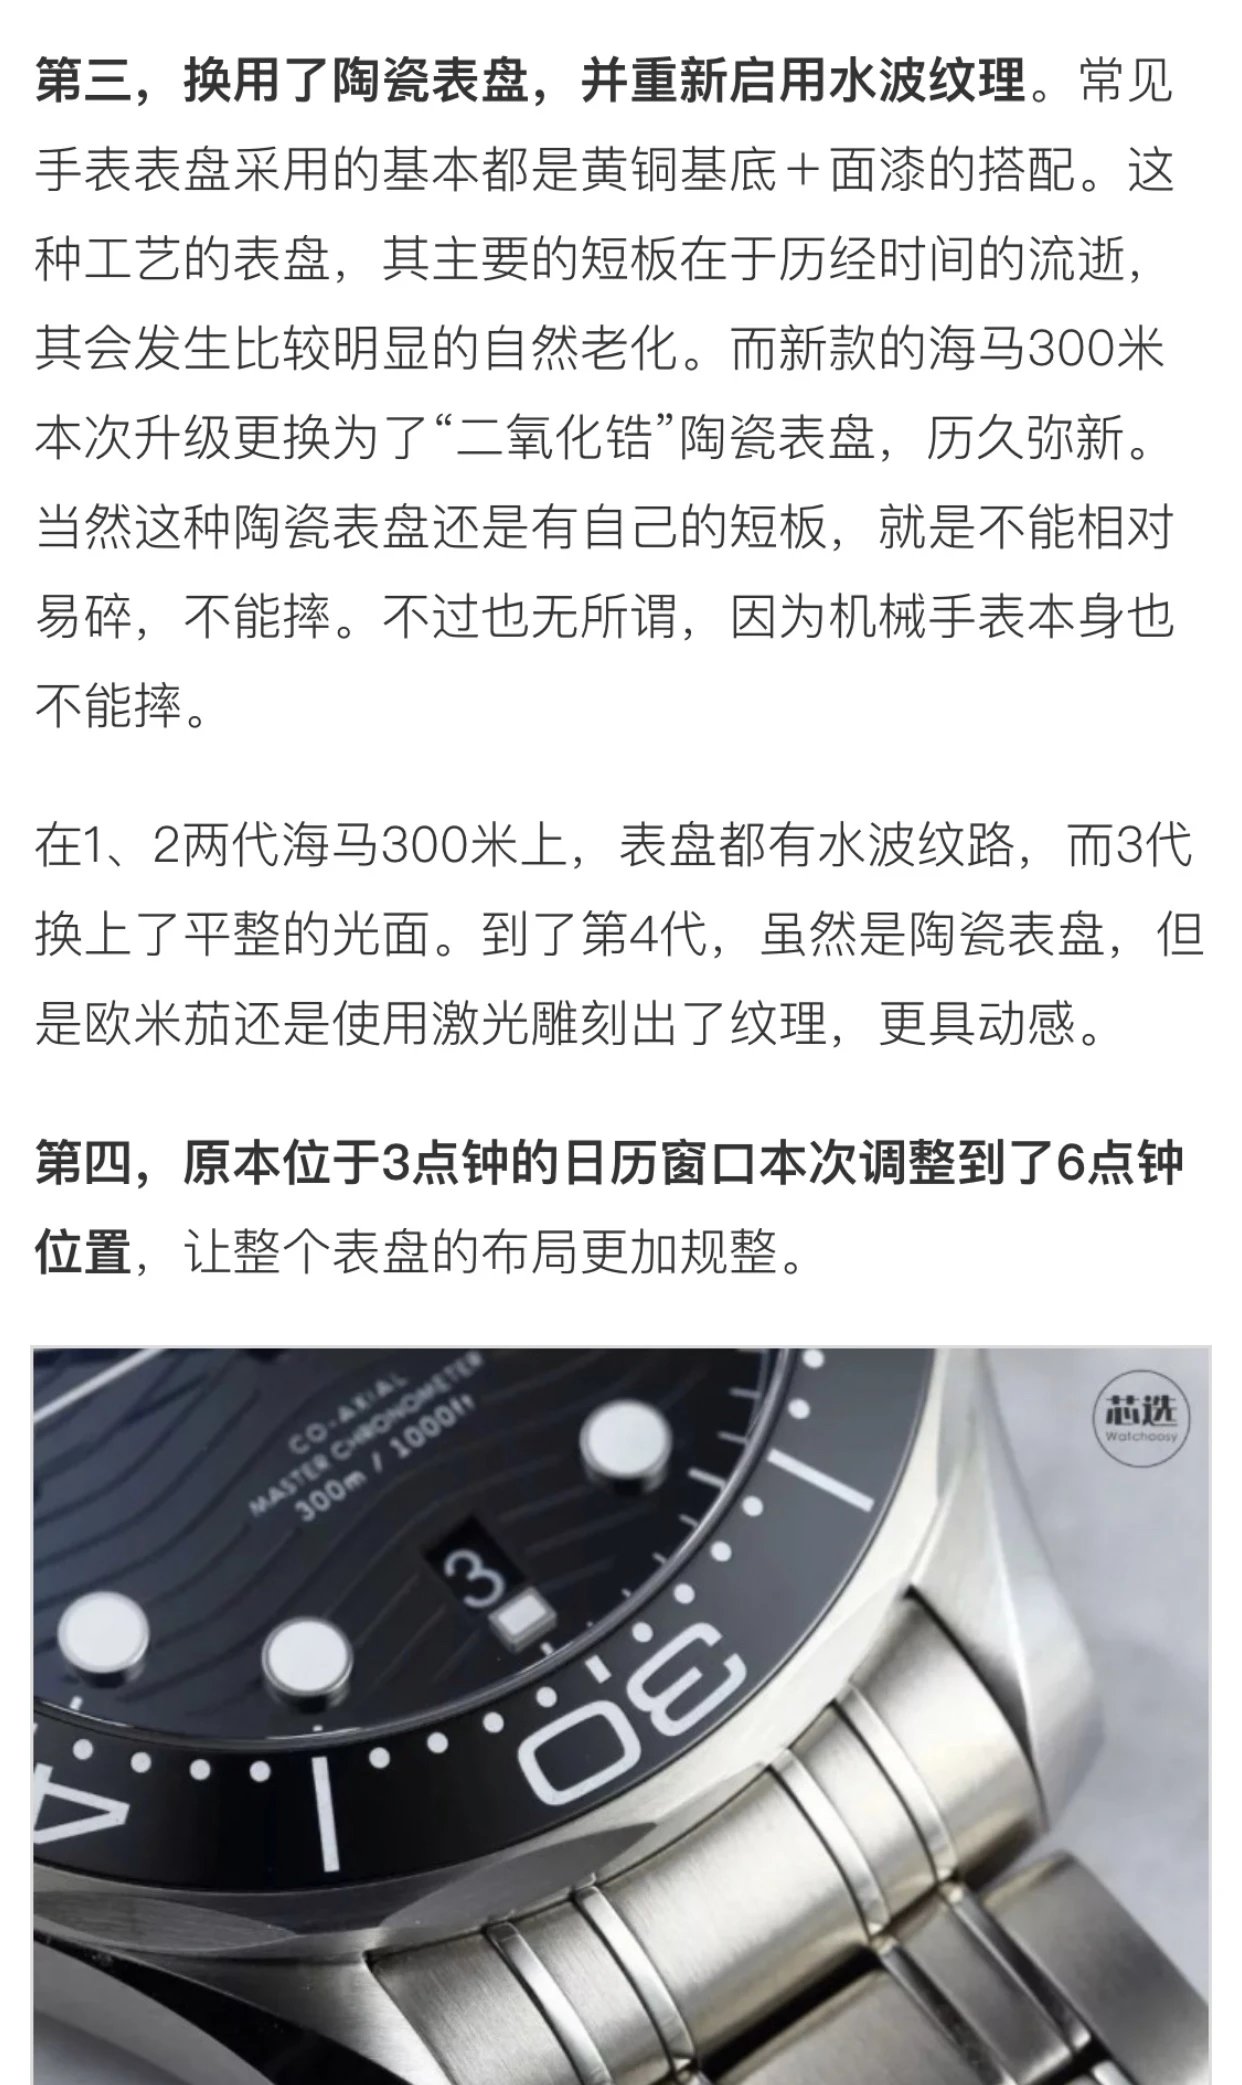 VS新品：新海马300M间玫金胶带机械男士手表，VS版本和正品在12点位外圈口带有贵金属印记表